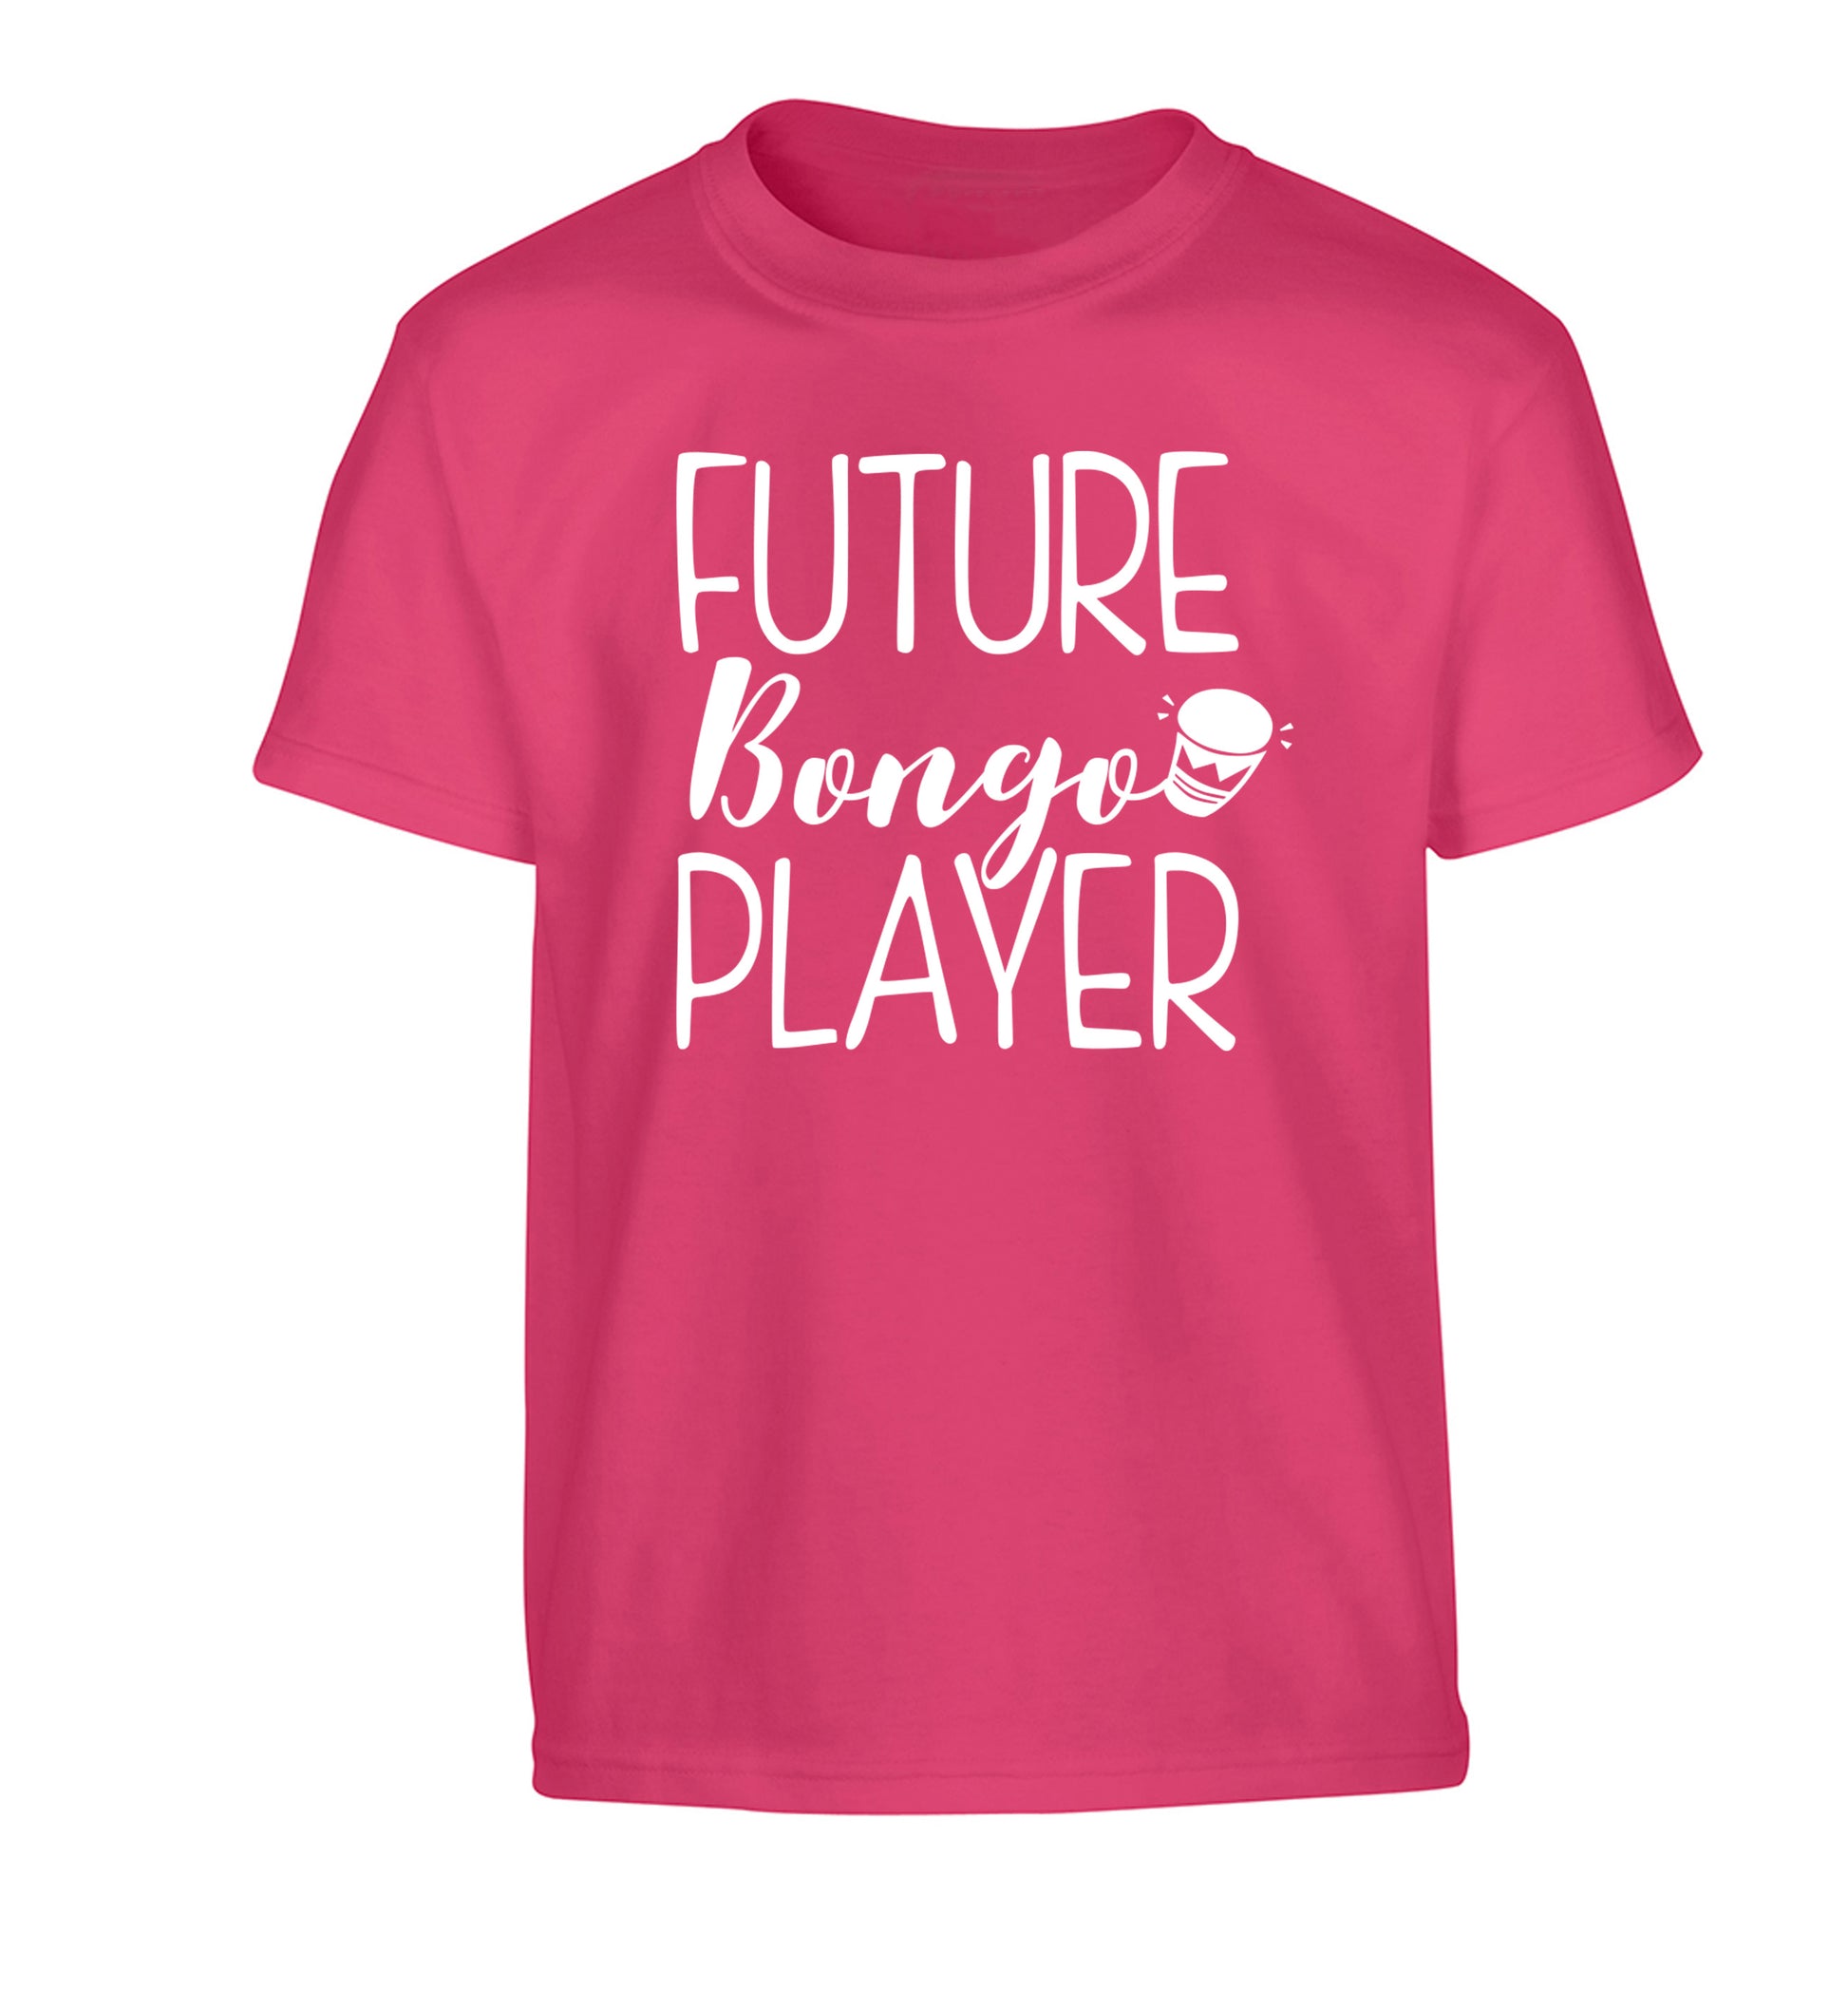 Future bongo player Children's pink Tshirt 12-14 Years